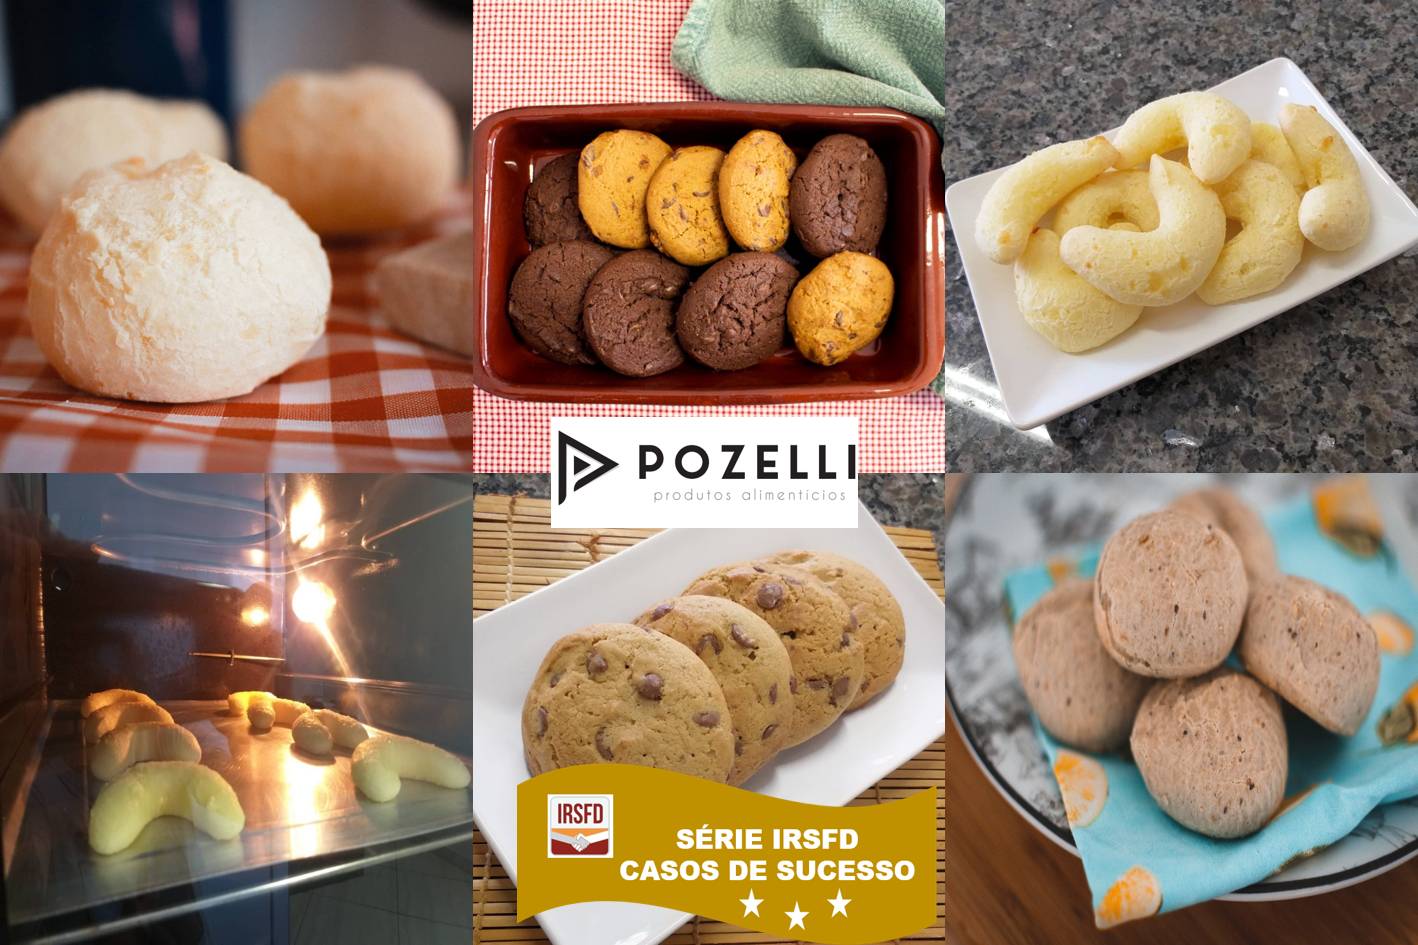 Pozelli – Ganhadora do XVIII Prêmio Food Design – 1ª Edição Rumo à Cultura de Segurança de Alimentos